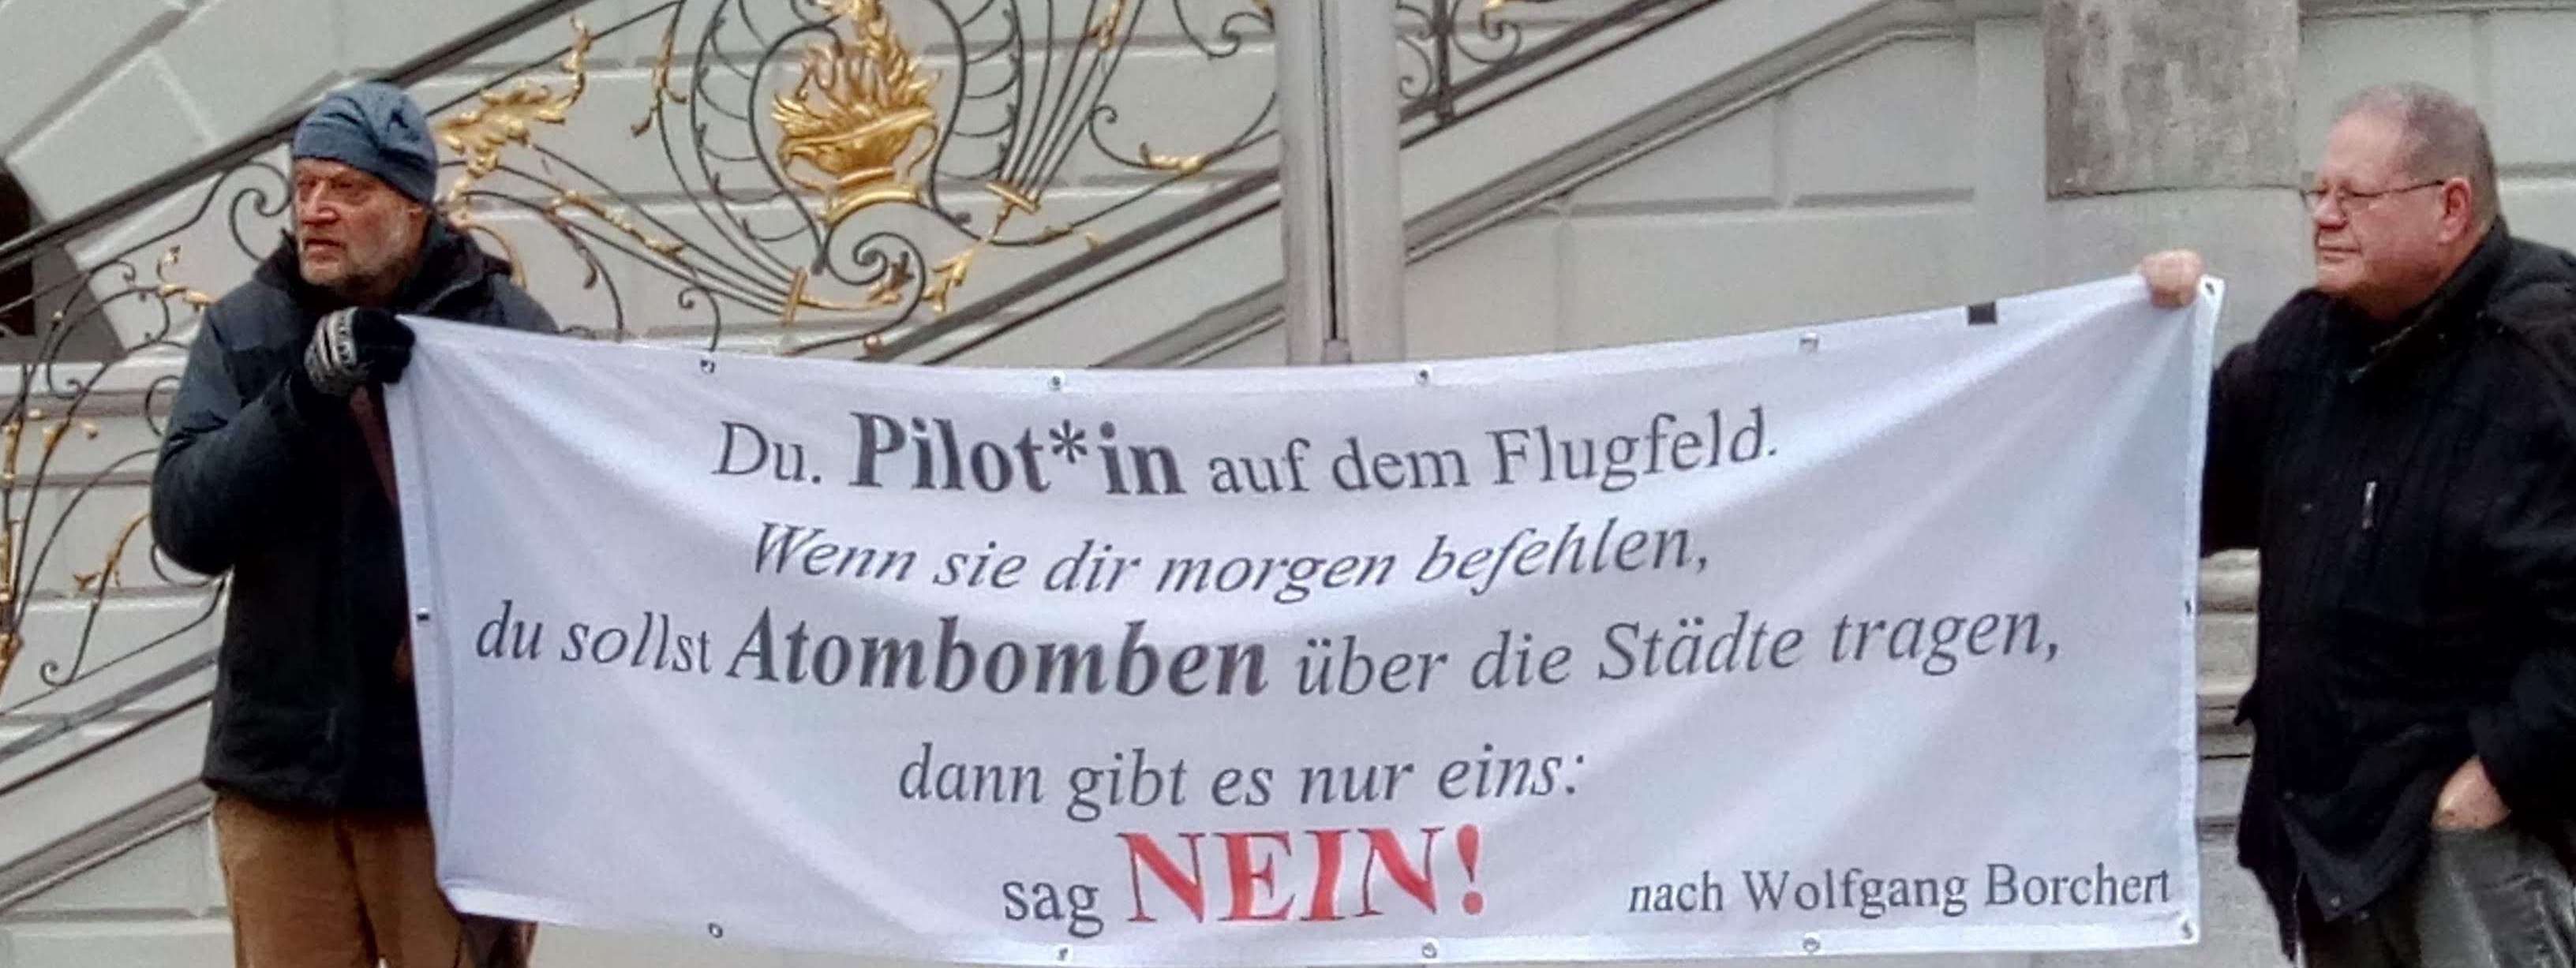 Zwei aktivisten halten eoin Banner mit einem Zitat von WQolfgang Borcherts